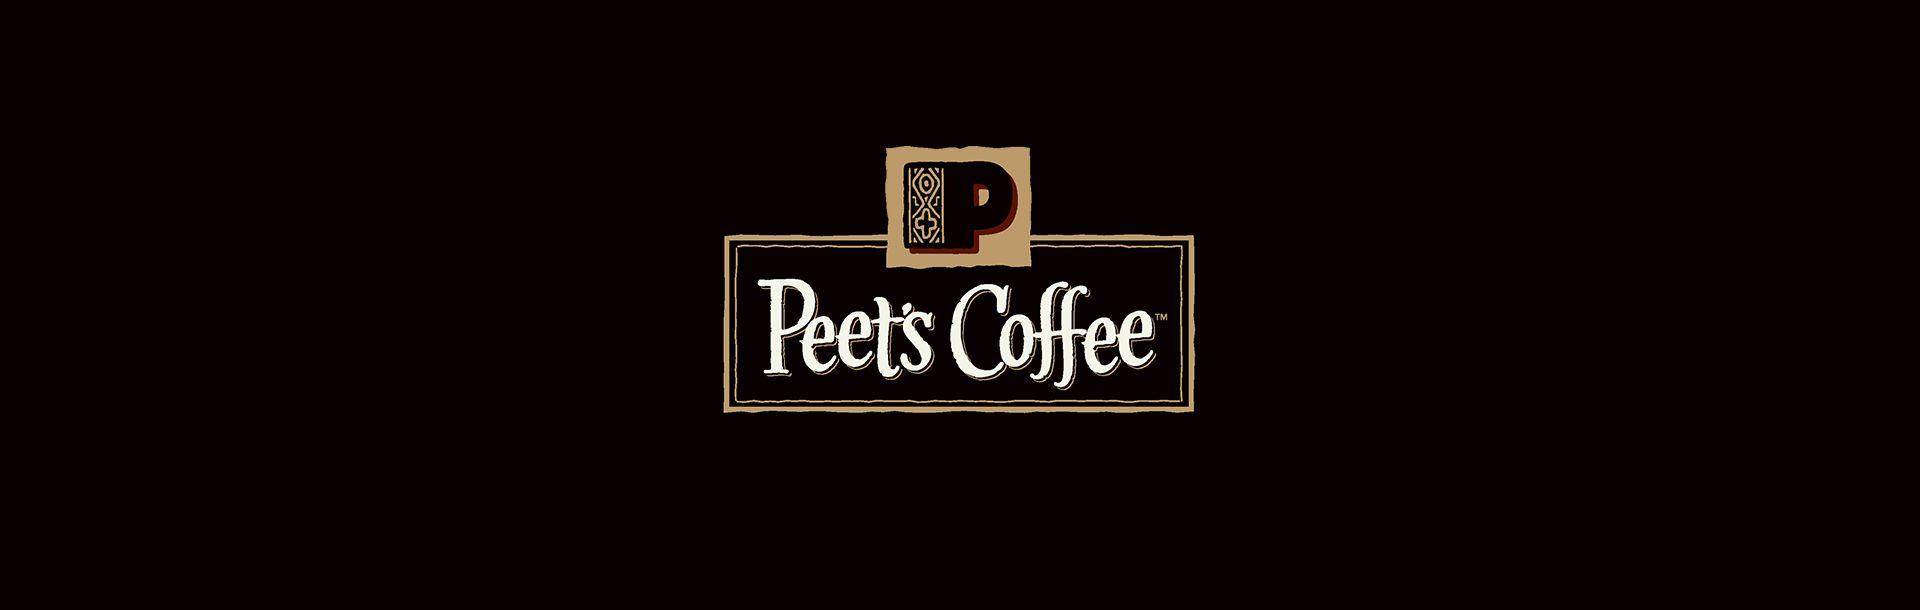 Peet's Coffee New Logo - Character. Peet's Coffee